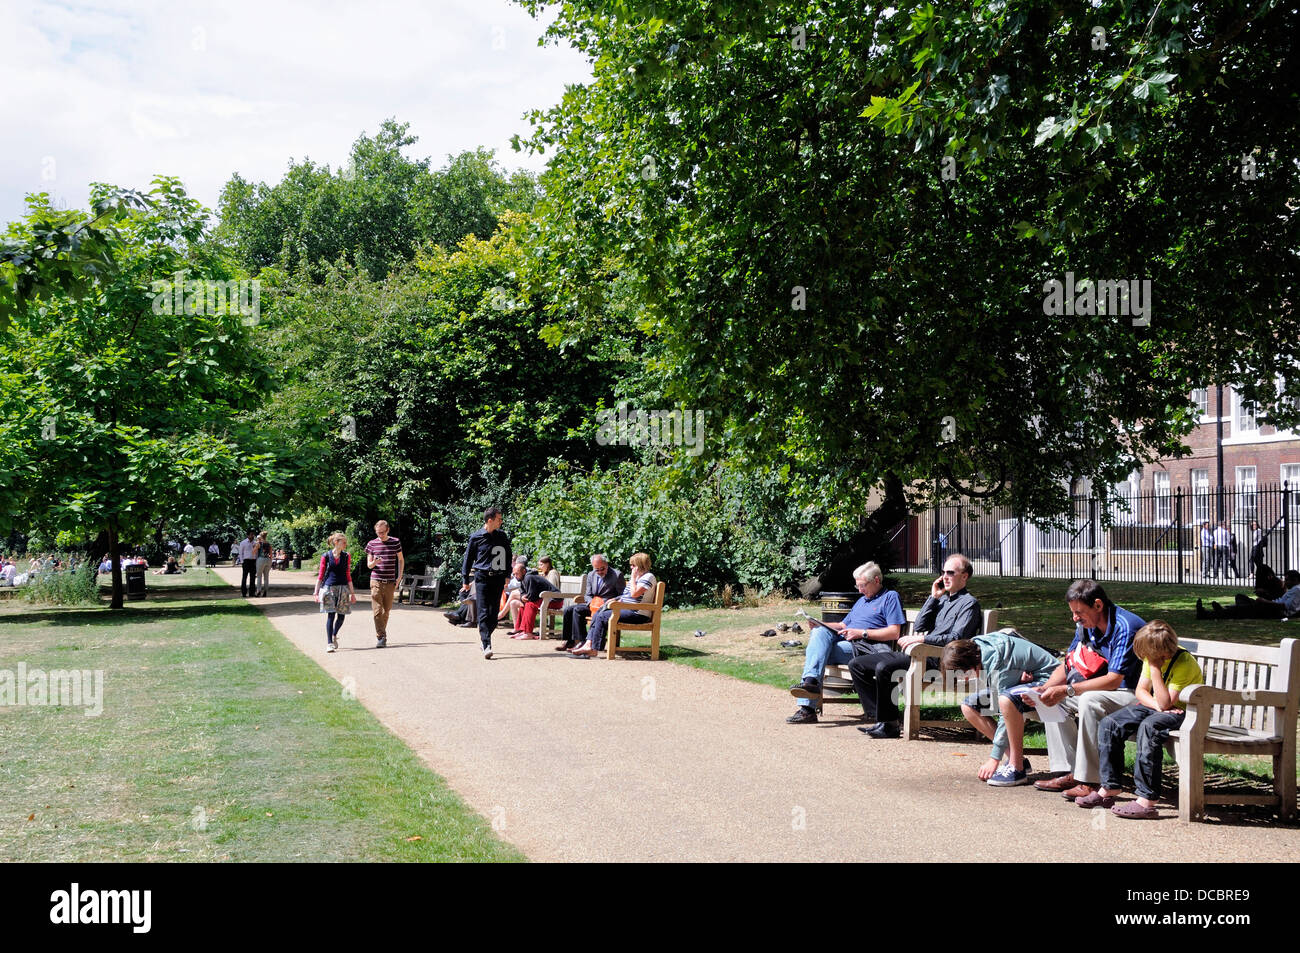 Campos de Lincoln's Inn Plaza pública con gente caminando por un sendero o sentados sobre bancos disfrutando del sol, Londres, Inglaterra Foto de stock